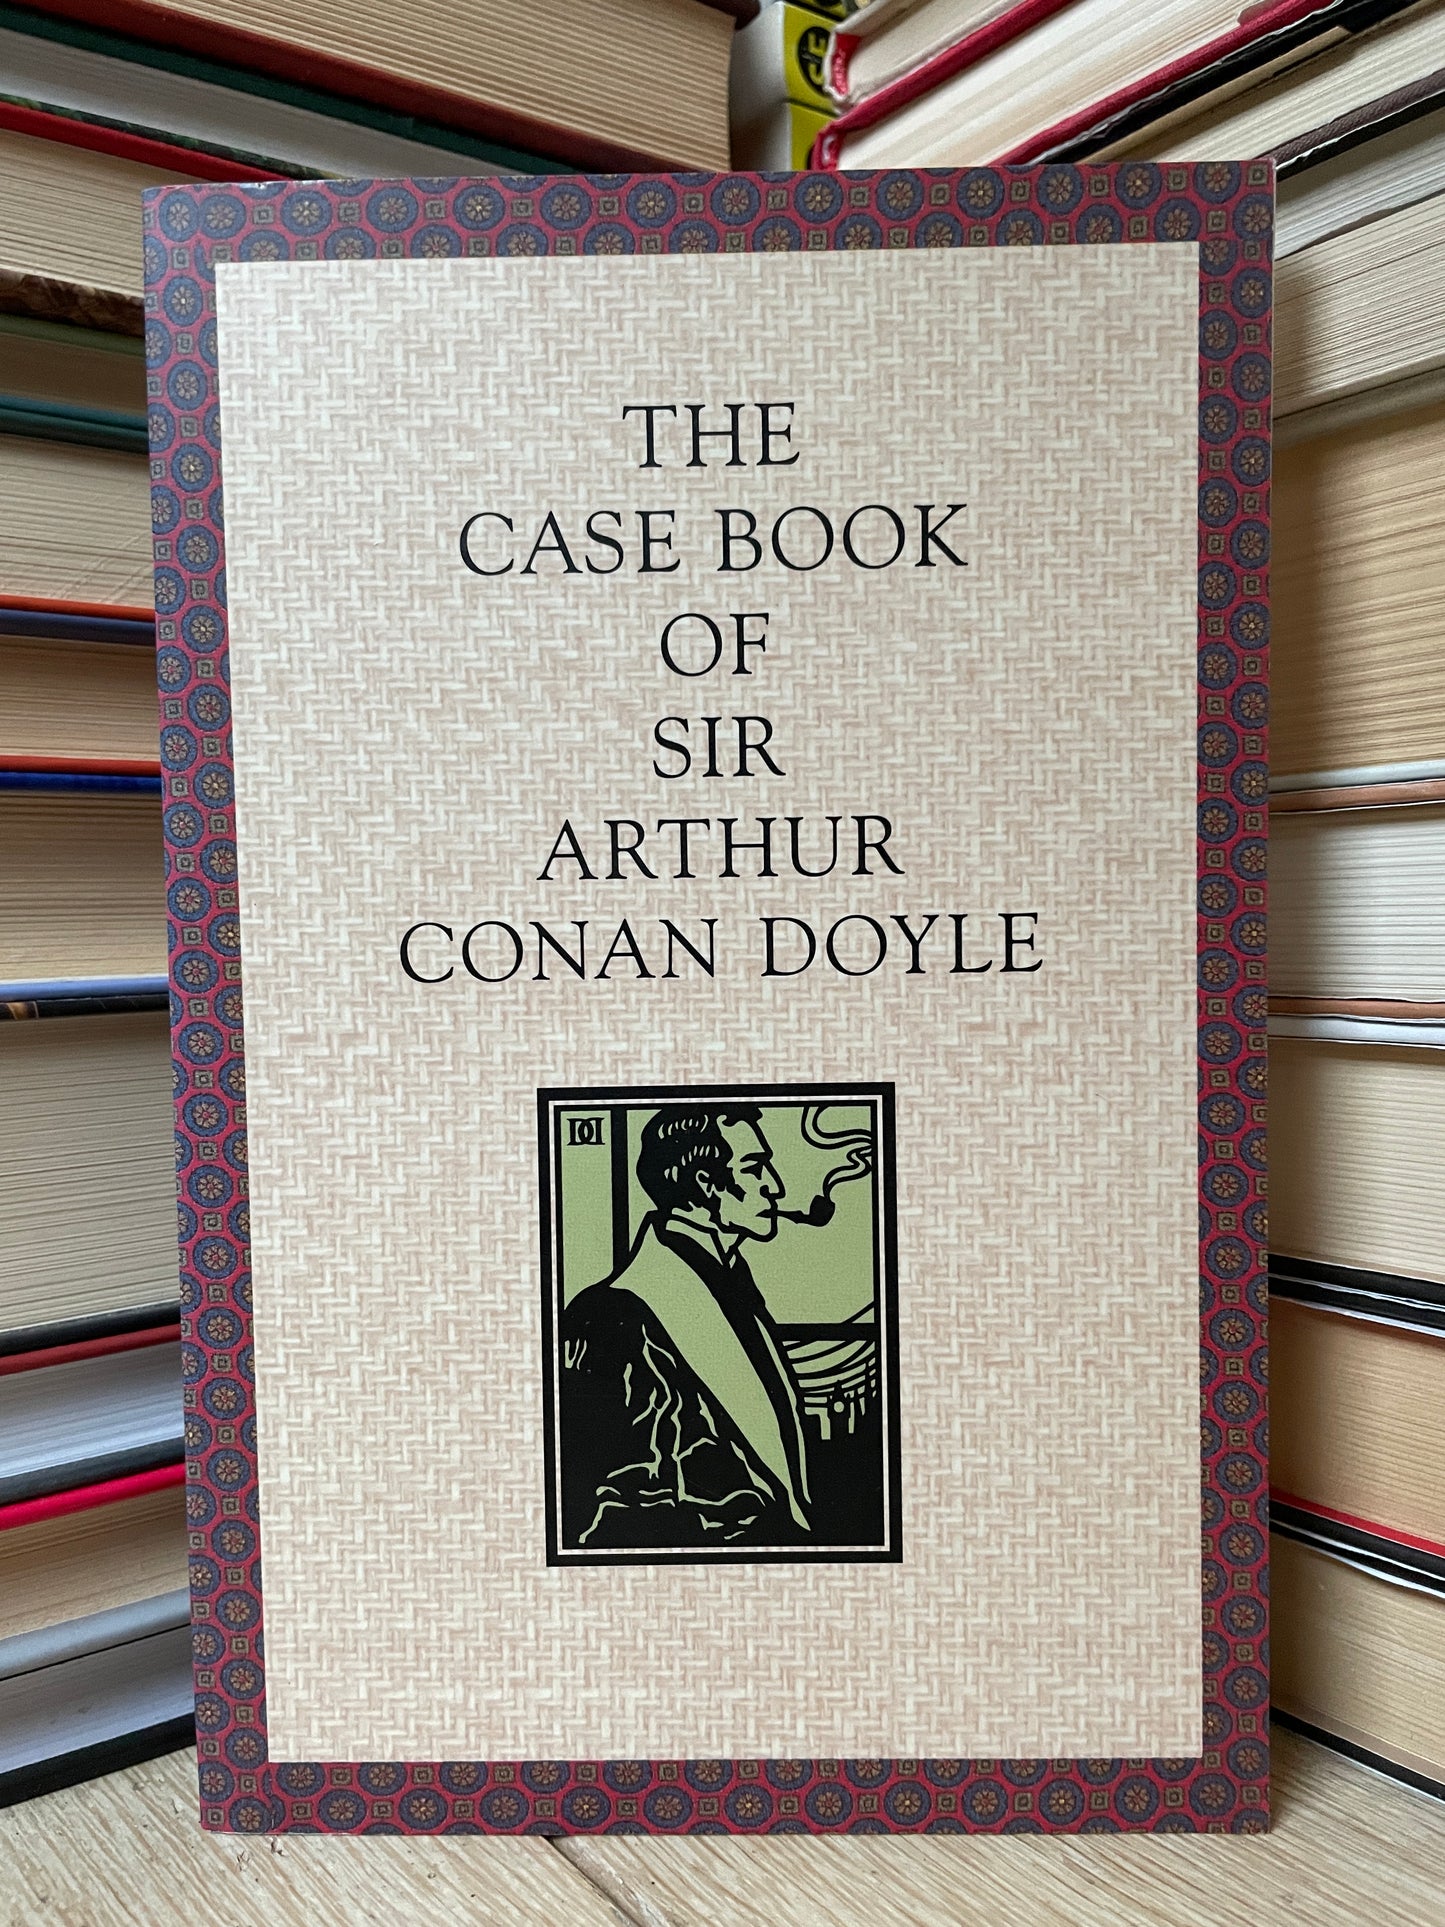 The Case Book of Sir Arthur Conan Doyle